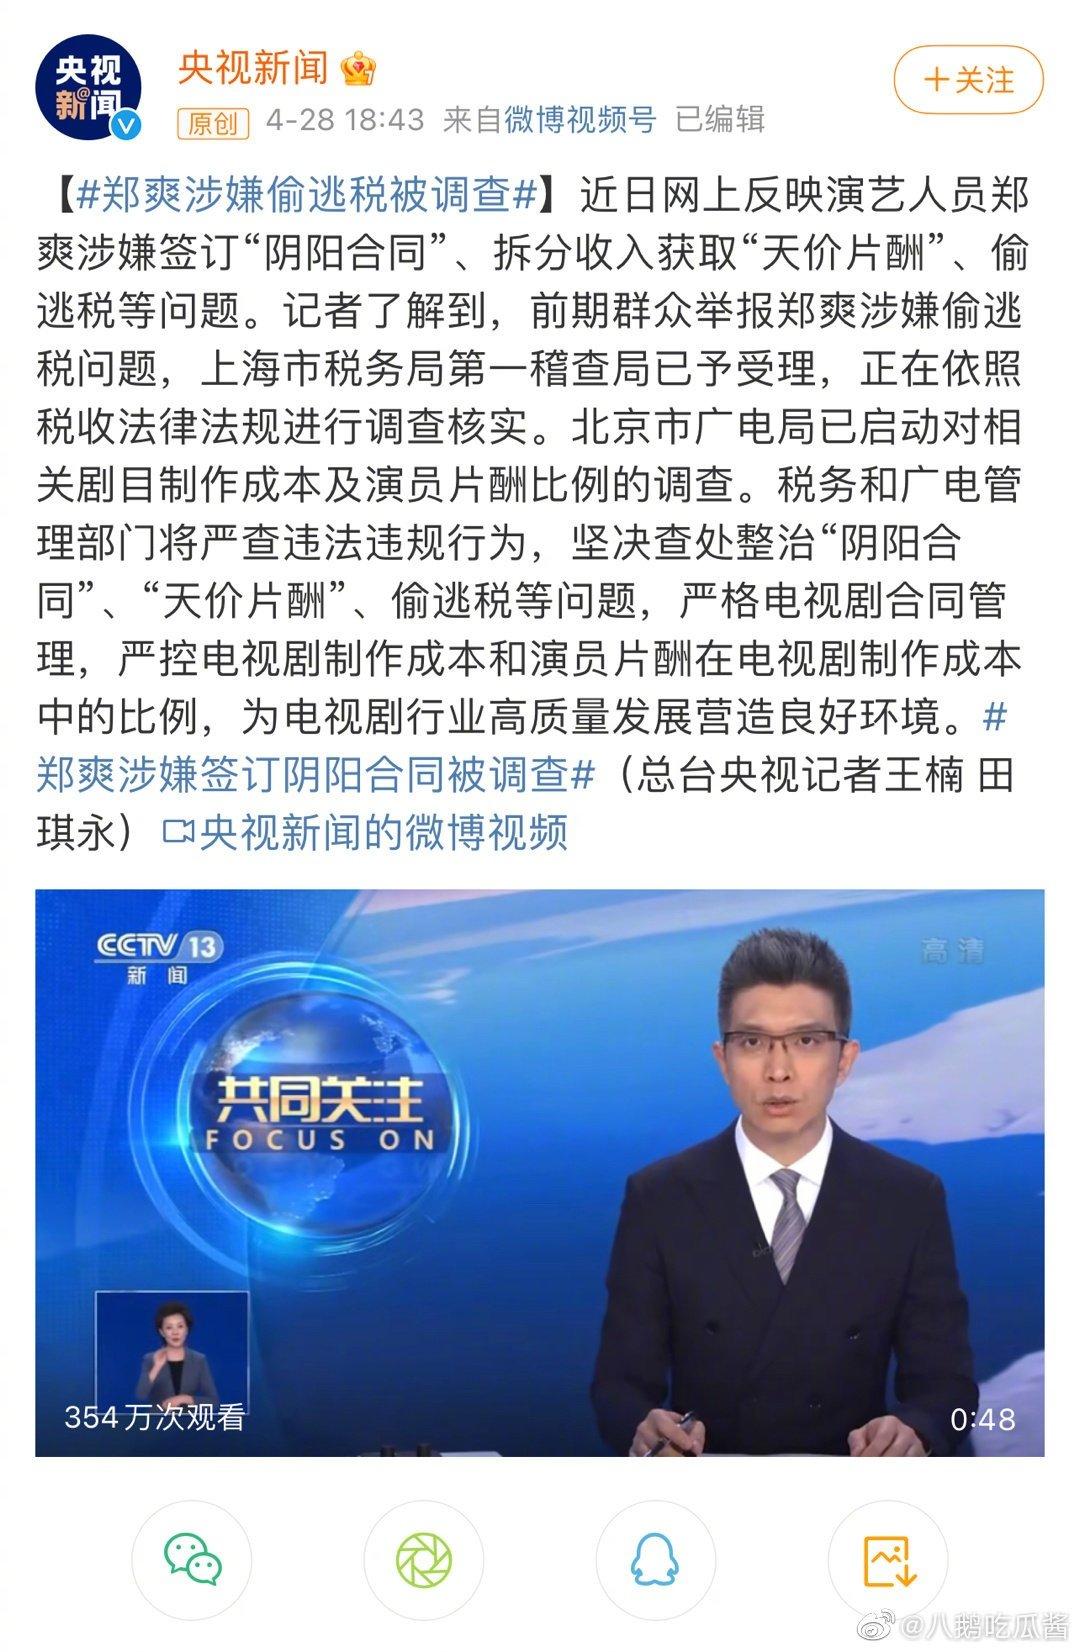 CCTV đưa tin Trịnh Sảng bị nghi ngờ ký "hợp đồng âm dương" trốn thuế (Nguồn: Internet)